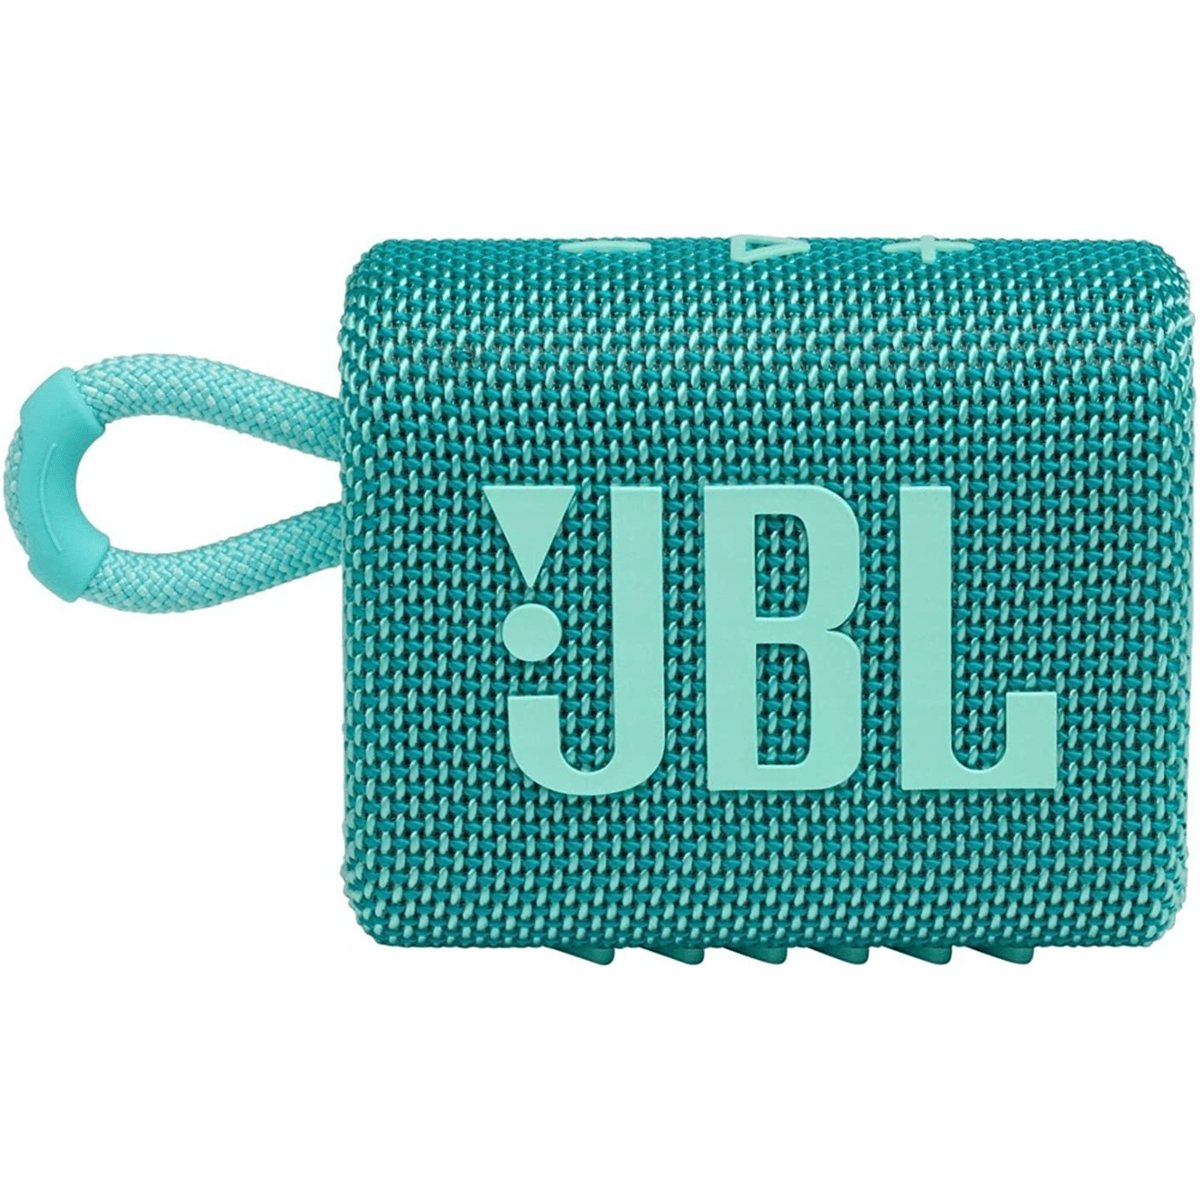 JBL Go 3 Taşınabilir Su Geçirmez Bluetooth Hoparlör Teal